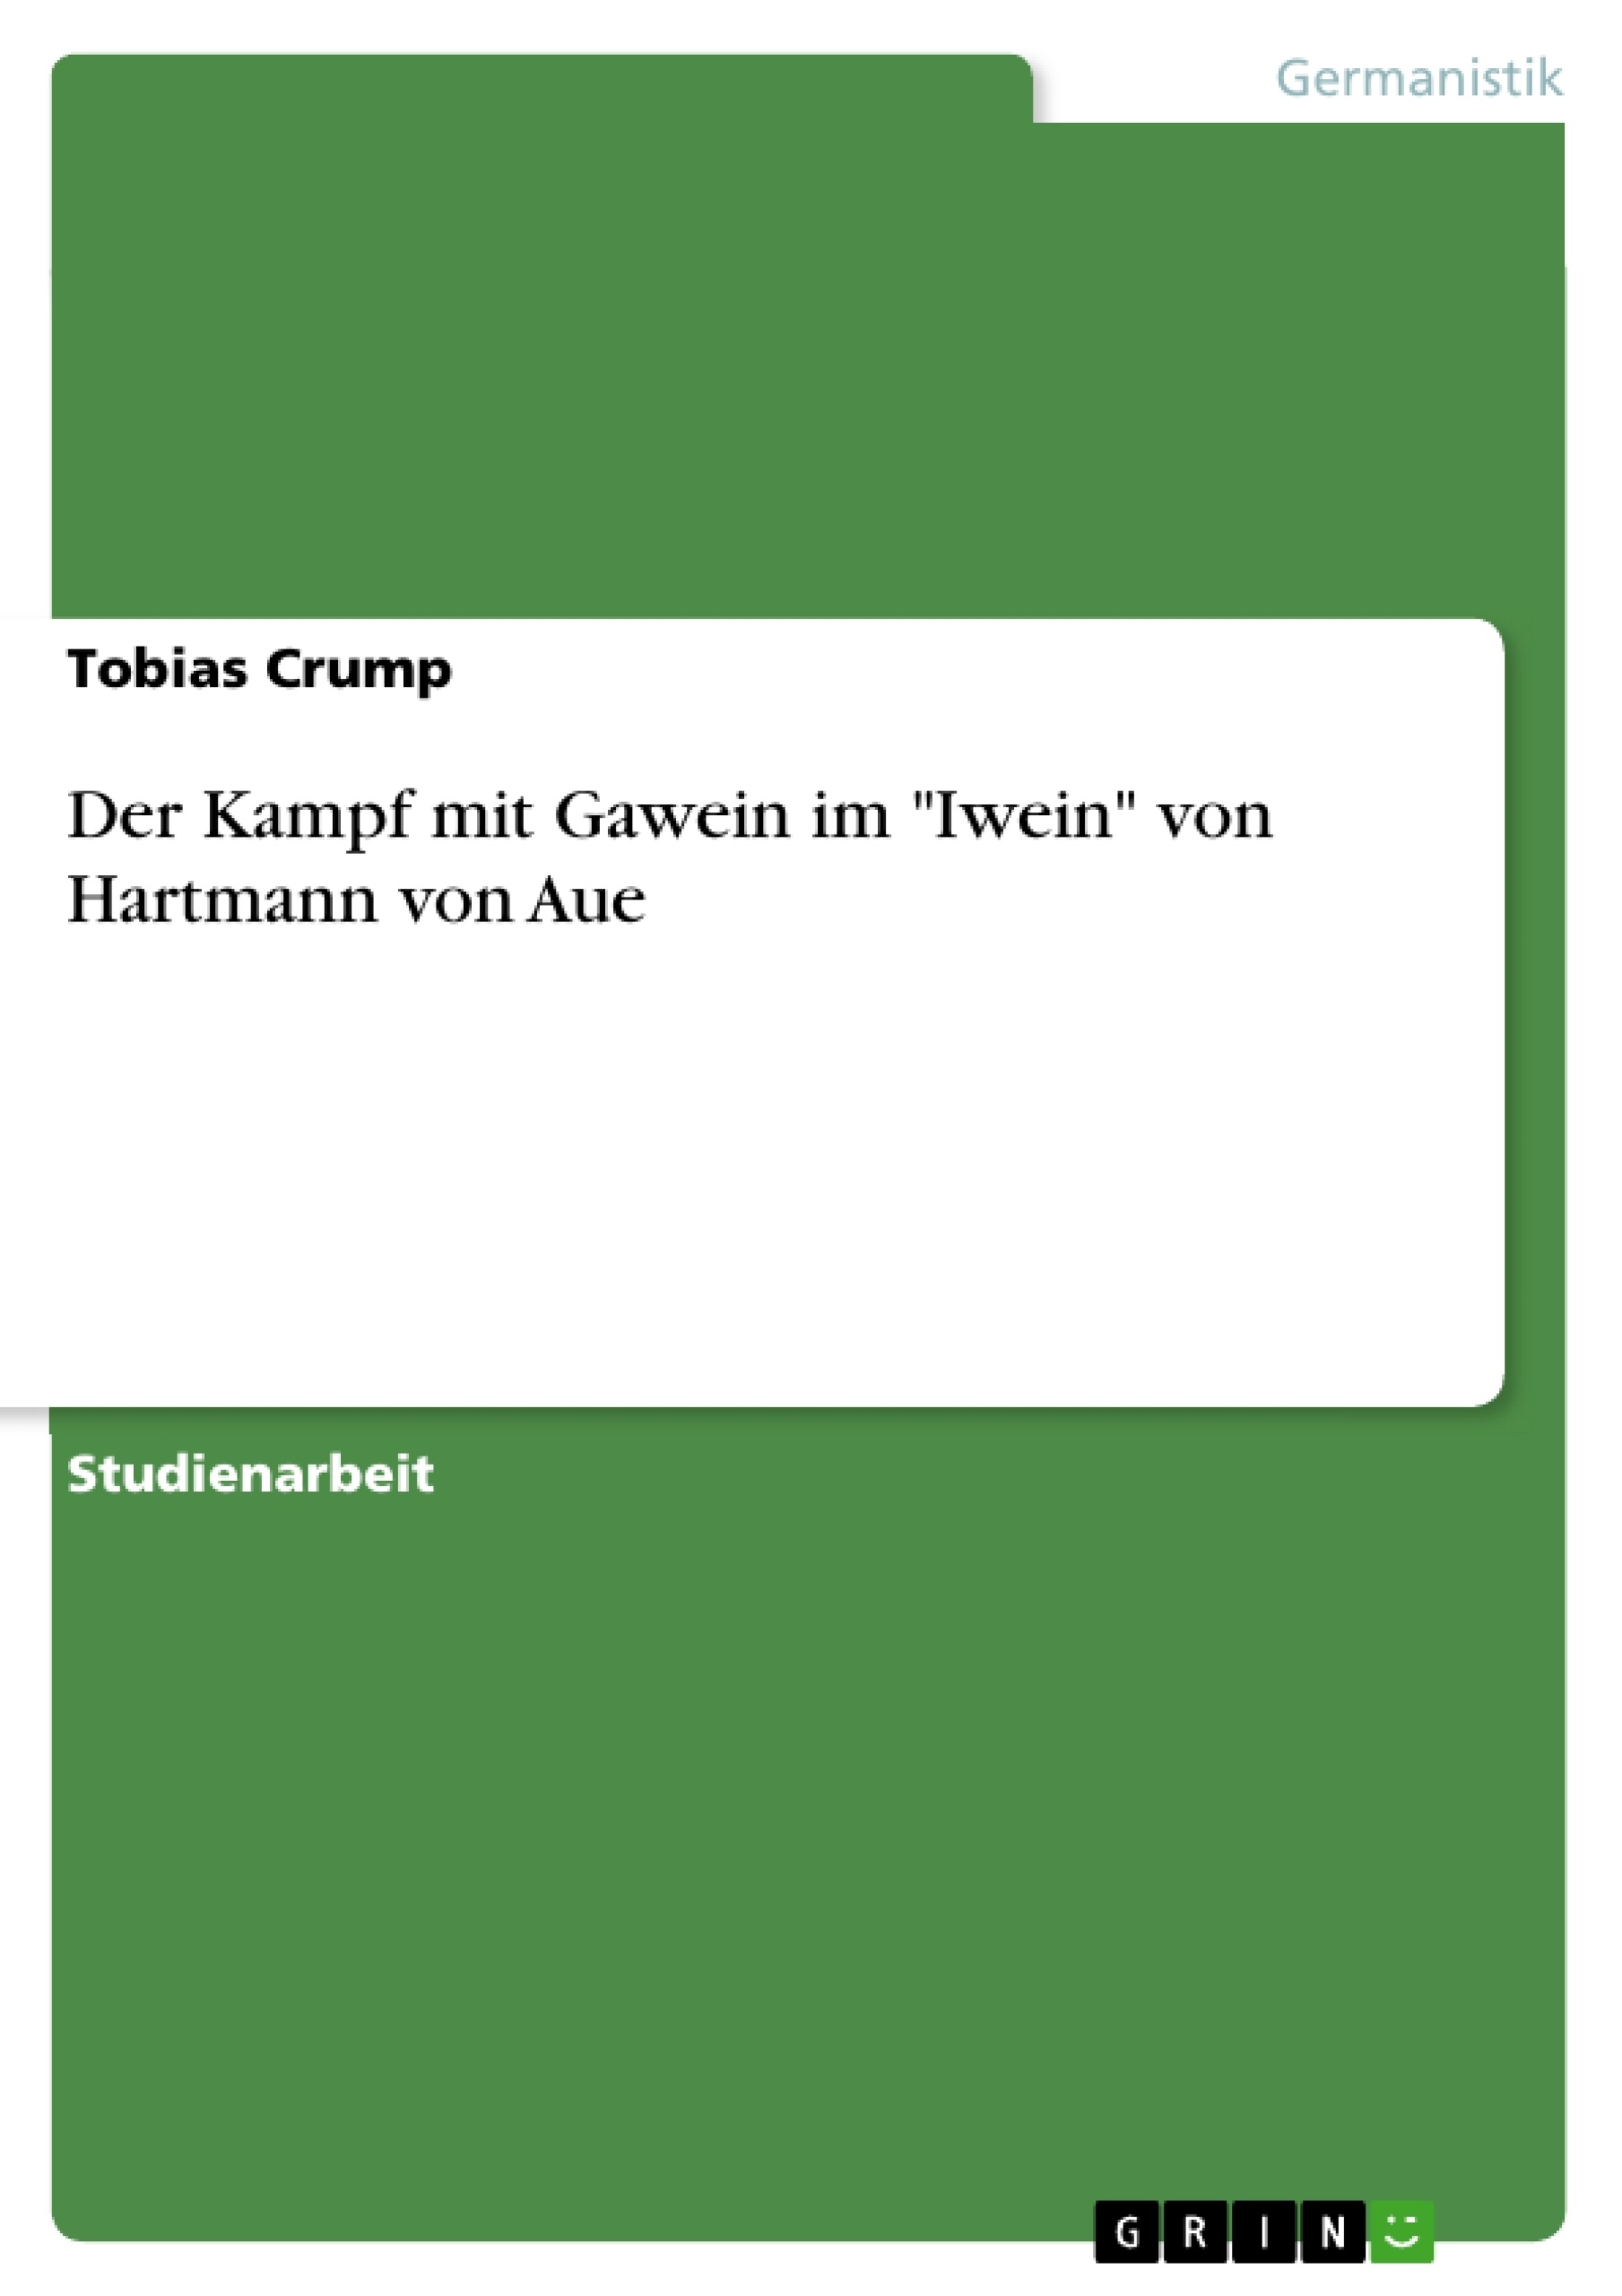 Título: Der Kampf mit Gawein im "Iwein" von Hartmann von Aue